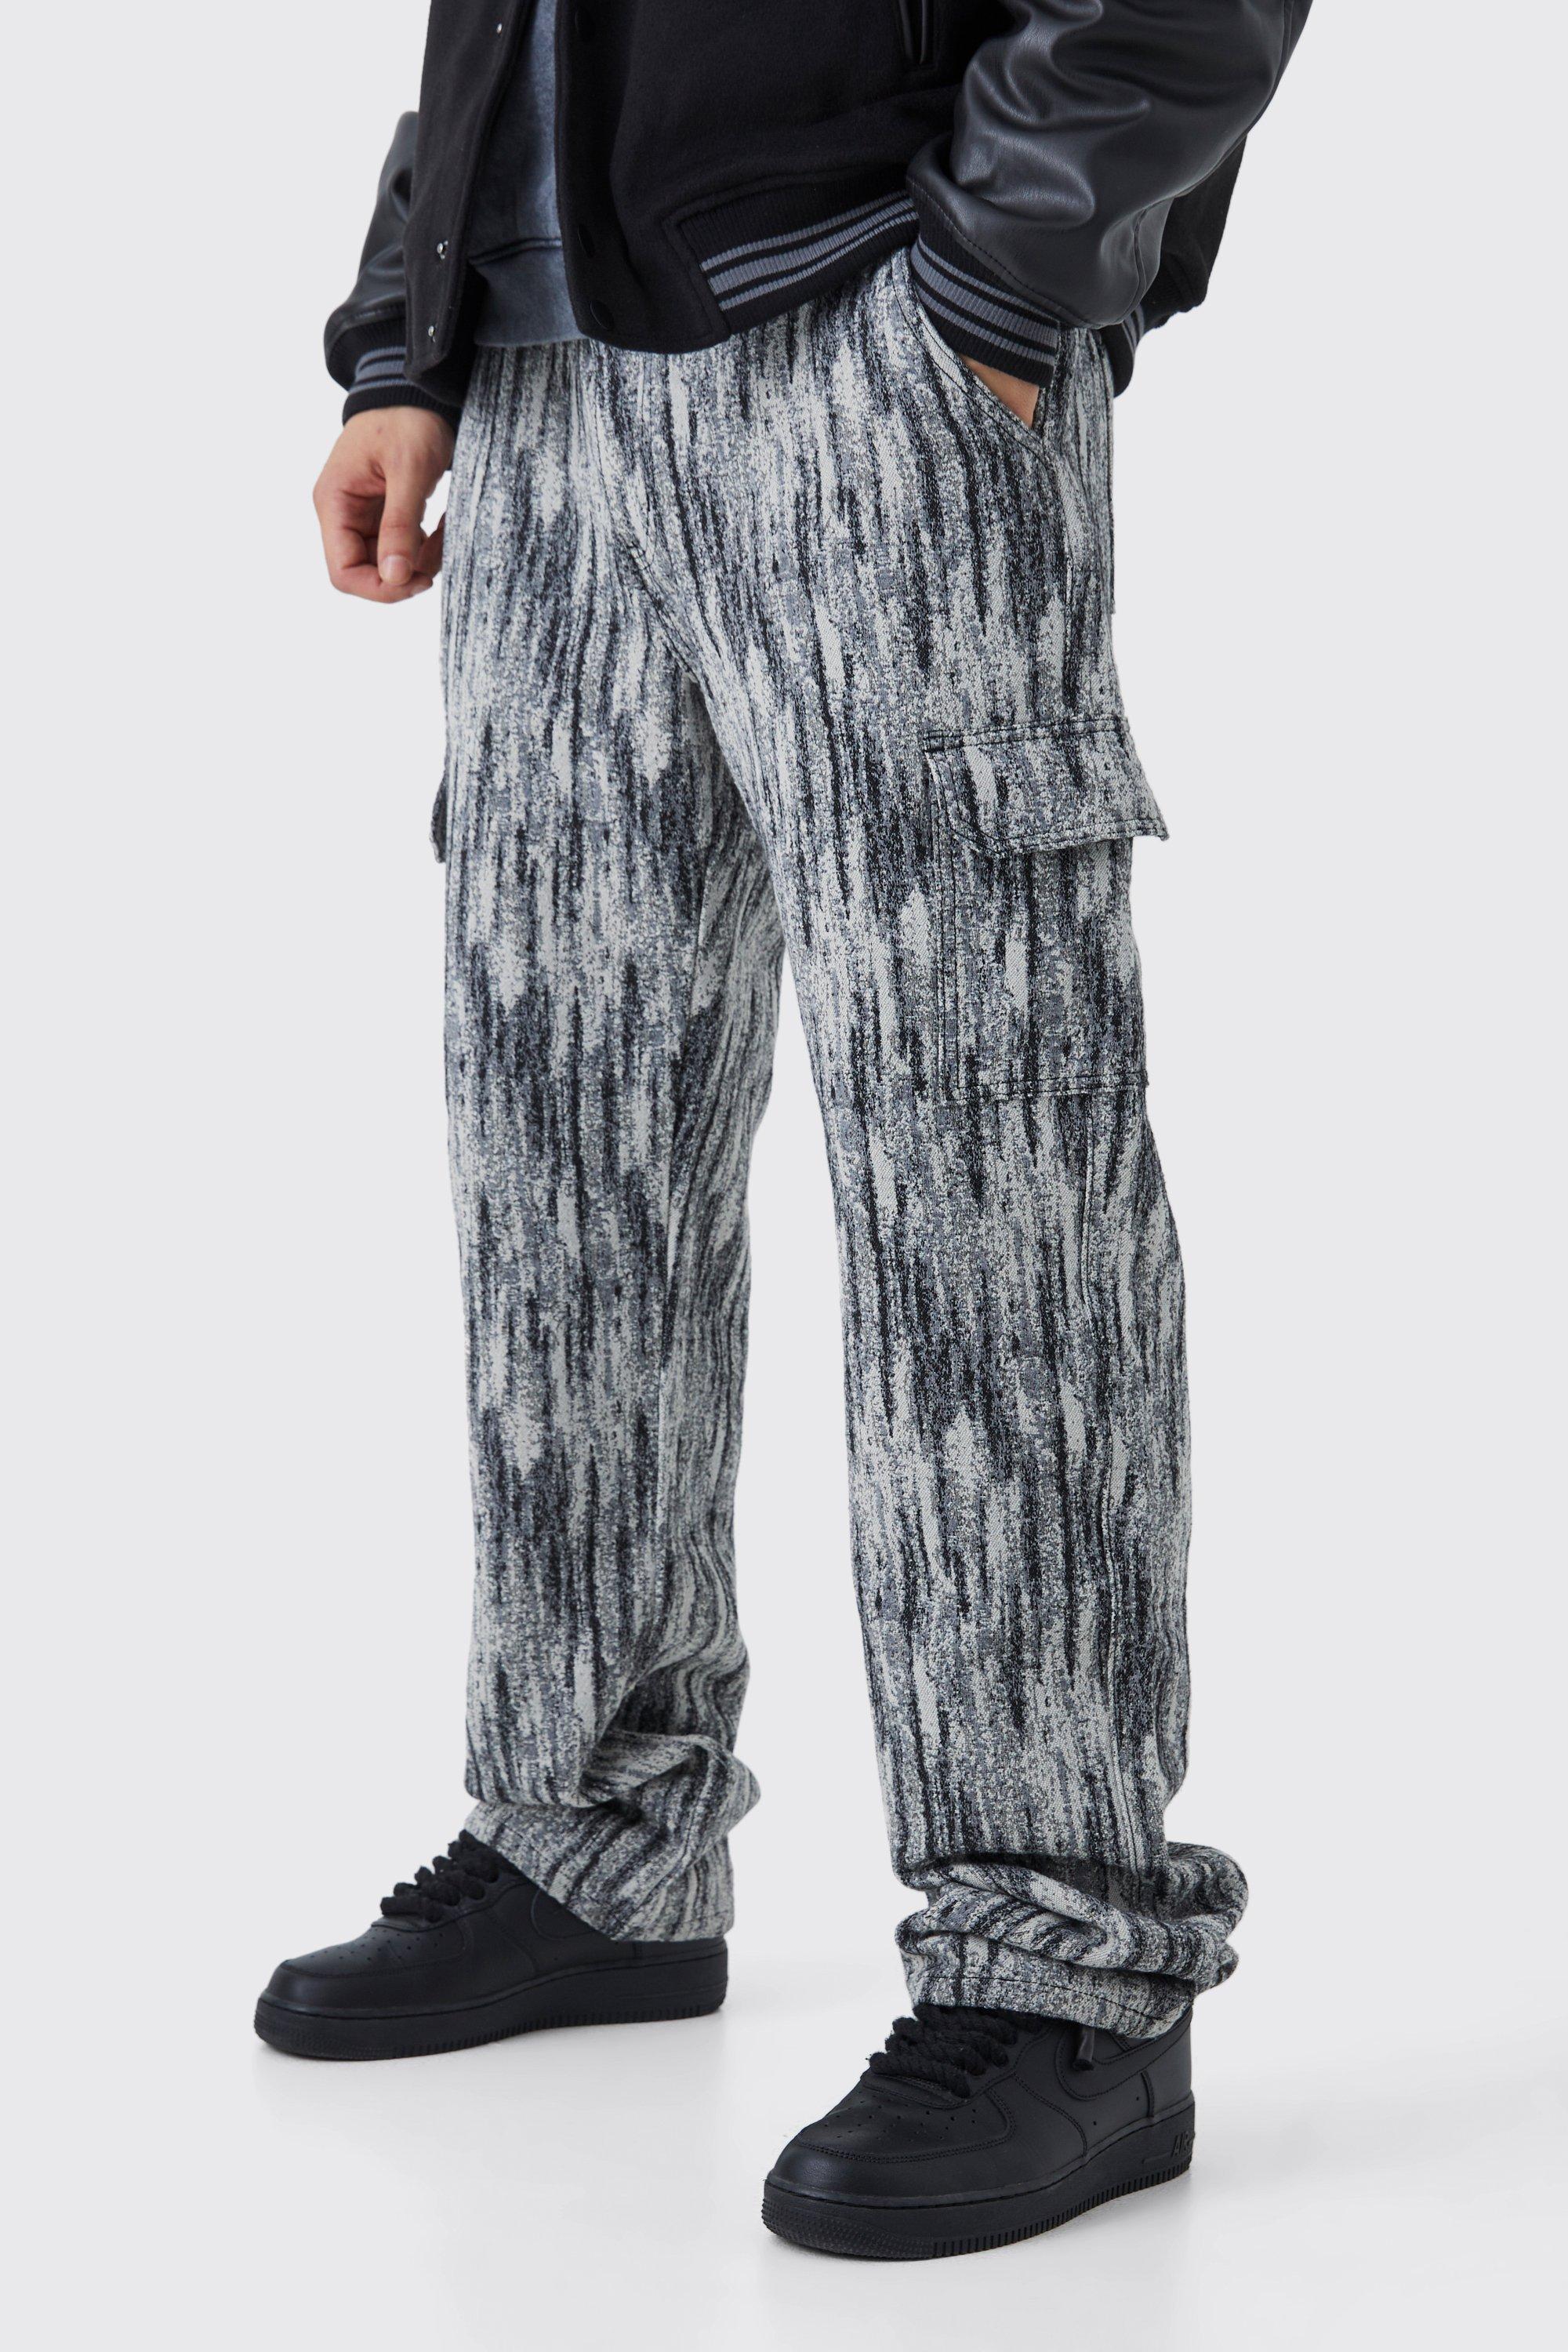 tall - pantalon cargo large à motif tapisserie homme - noir - 34, noir